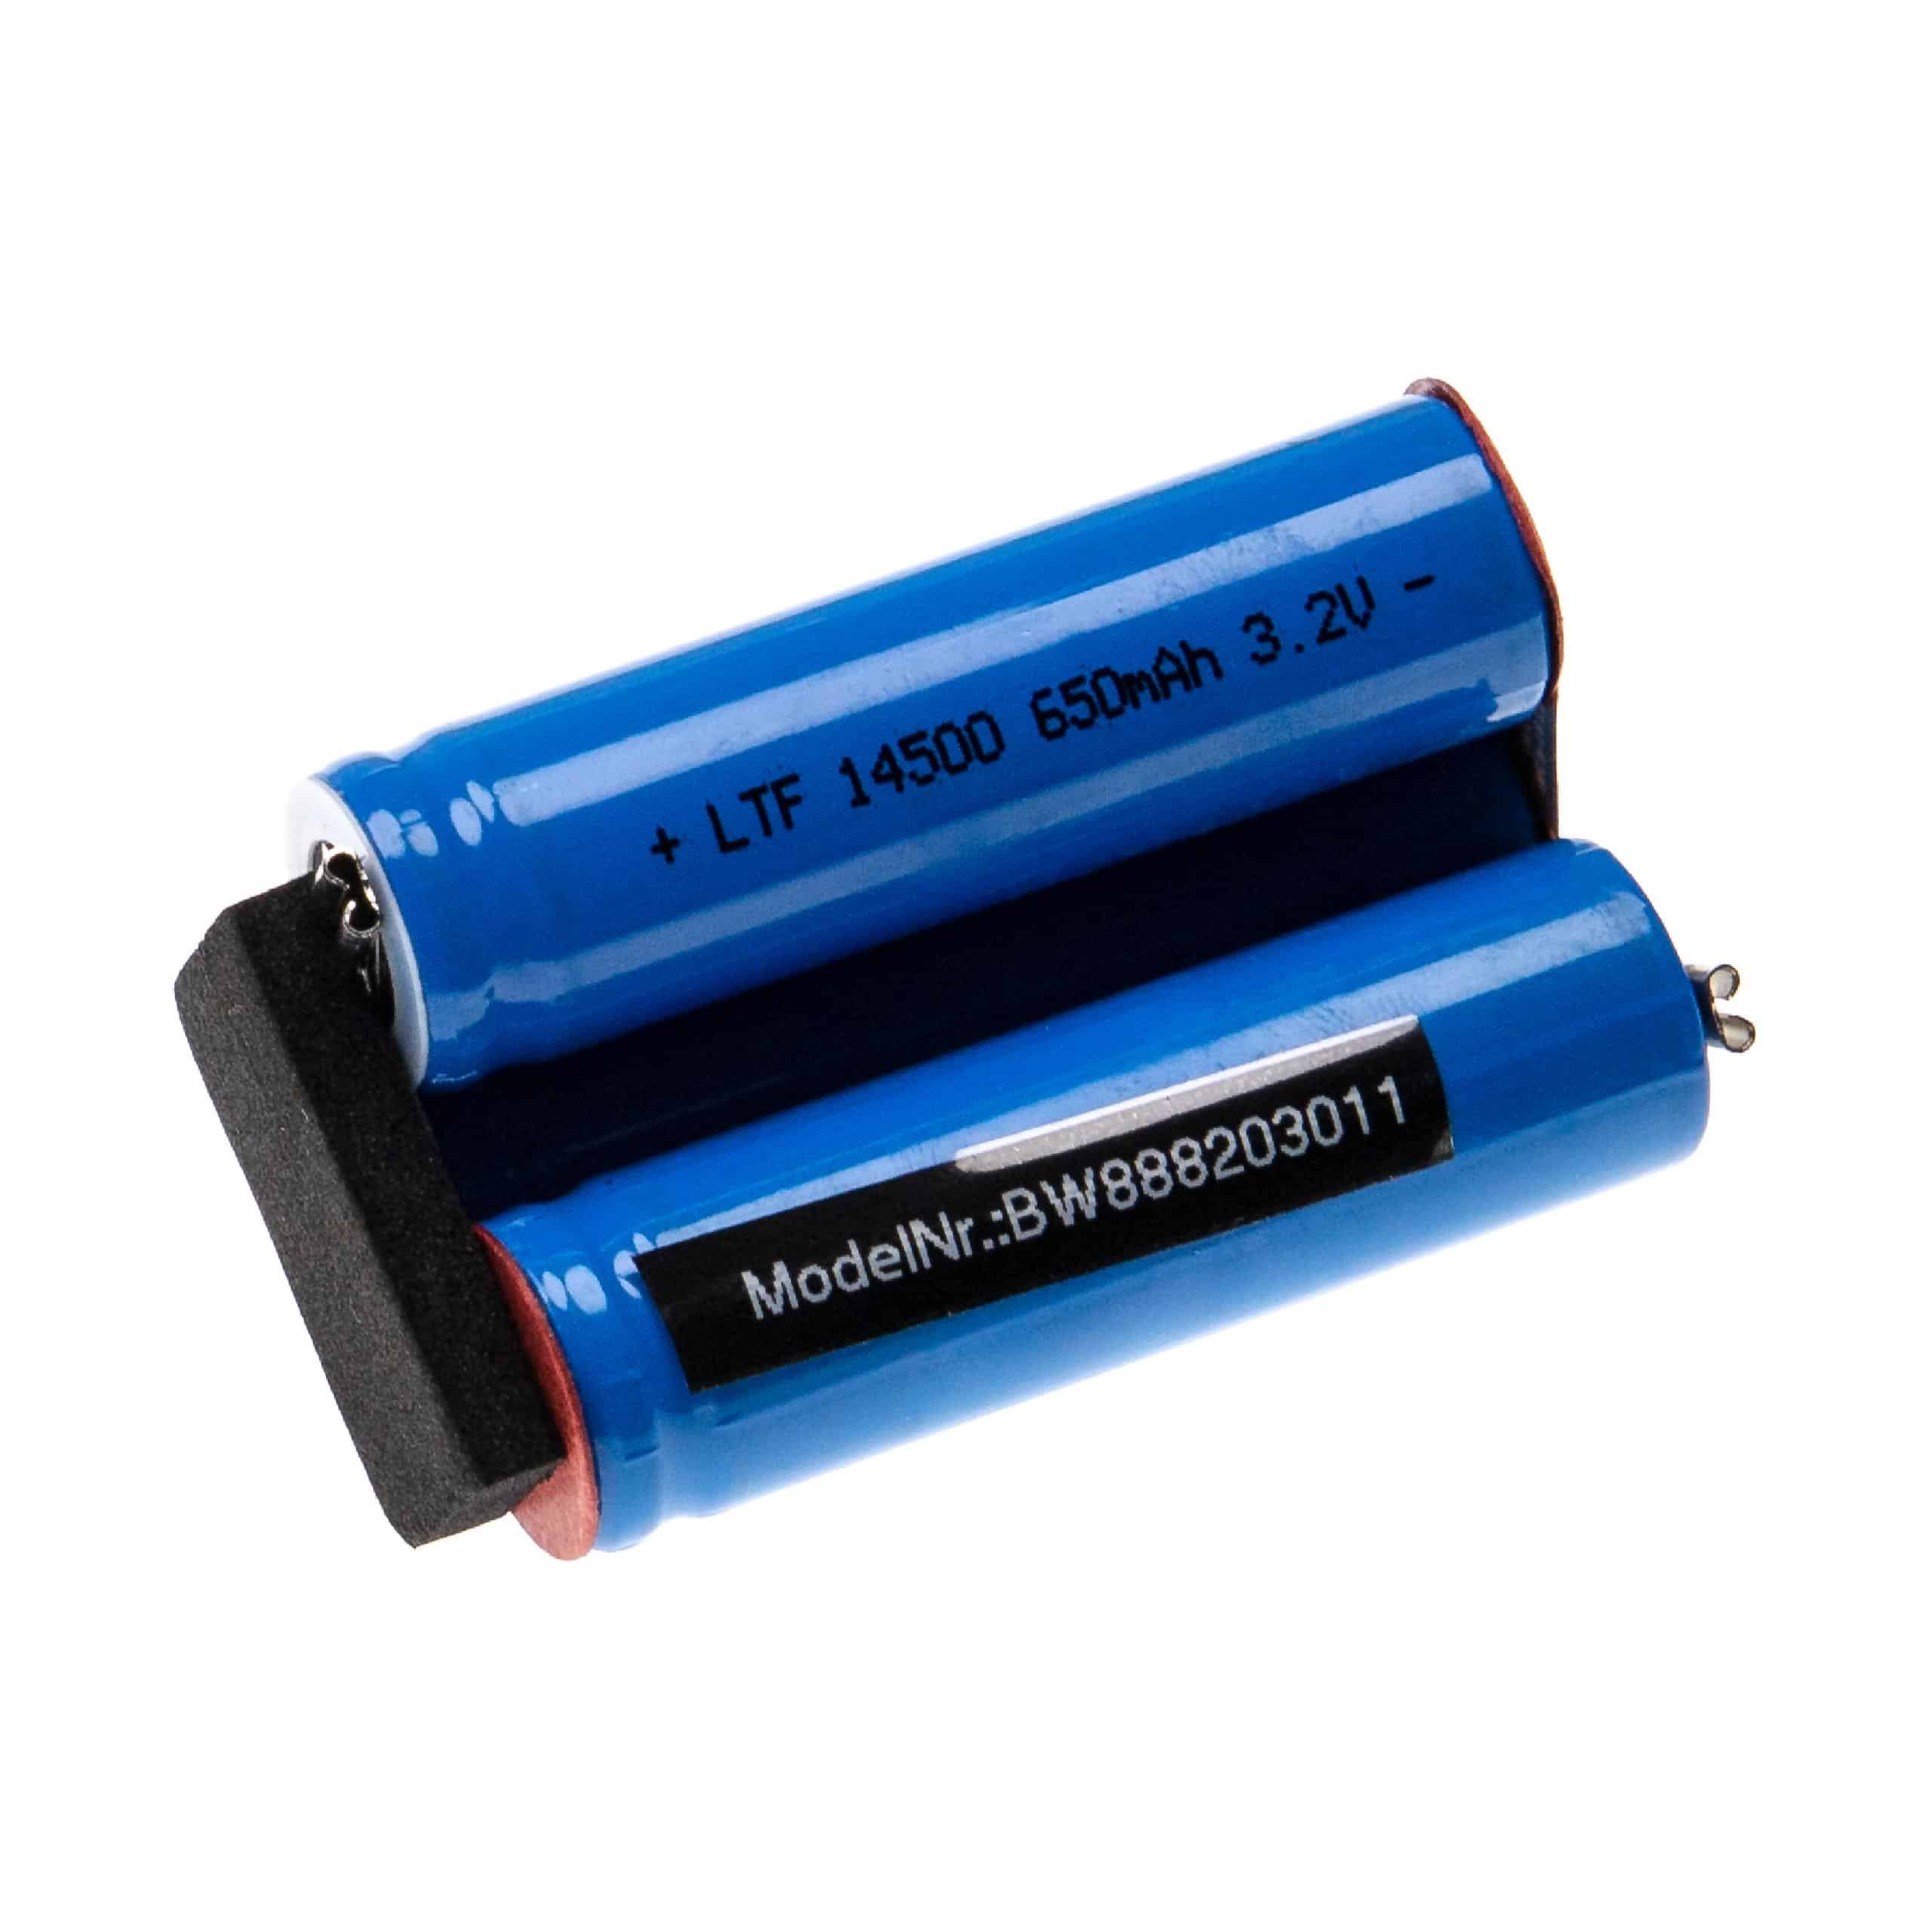 Batterie remplace Moser 1871-0071 pour tondeuse à cheveux - 1800mAh 3,2V Li-ion